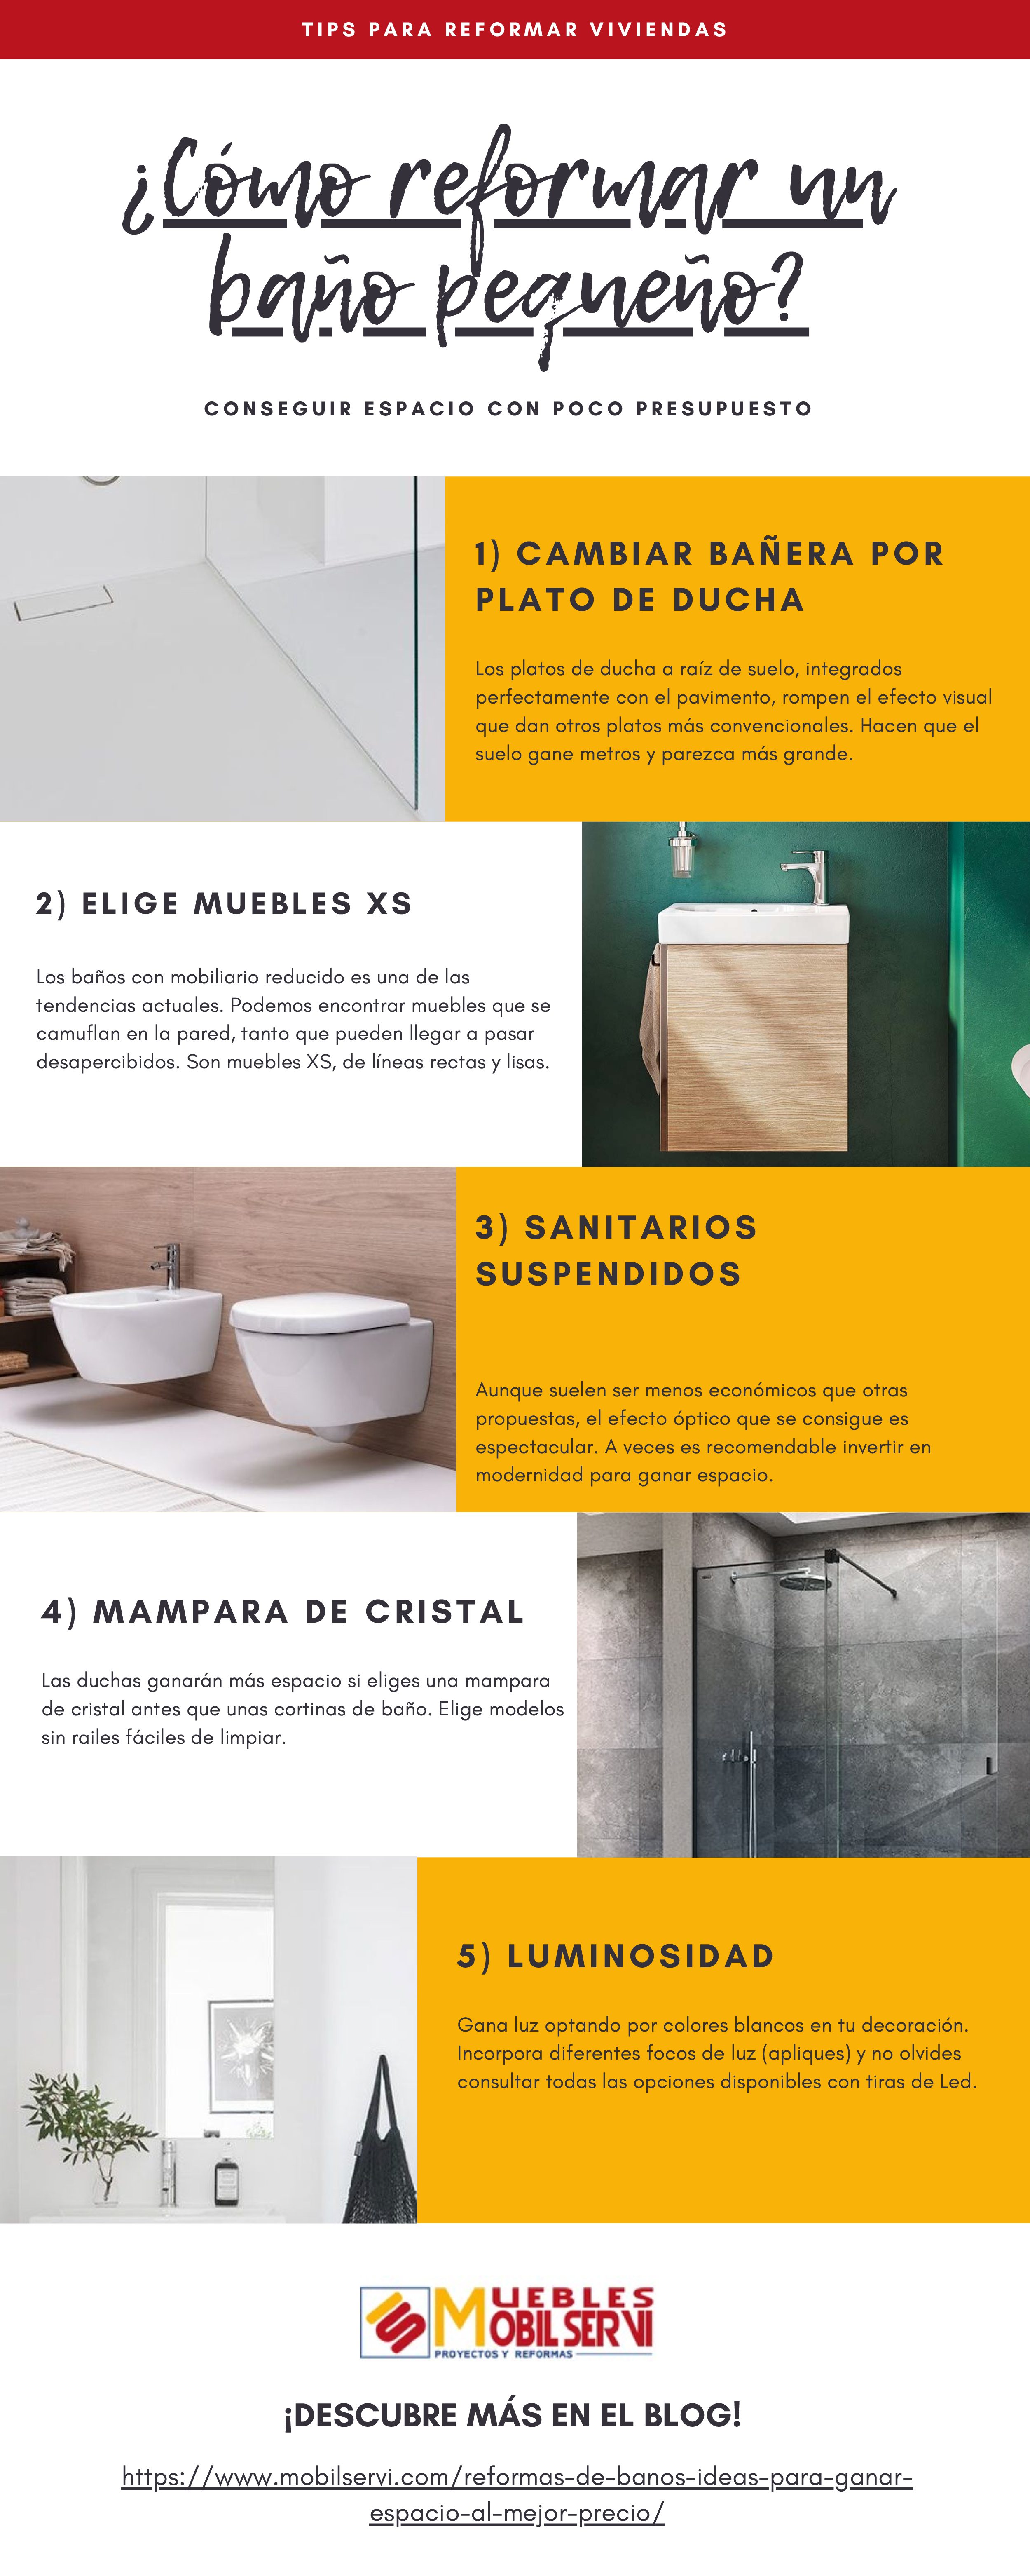 Infografía descargable de cómo reformar un baño pequeño siguiendo algunos consejos de expertos